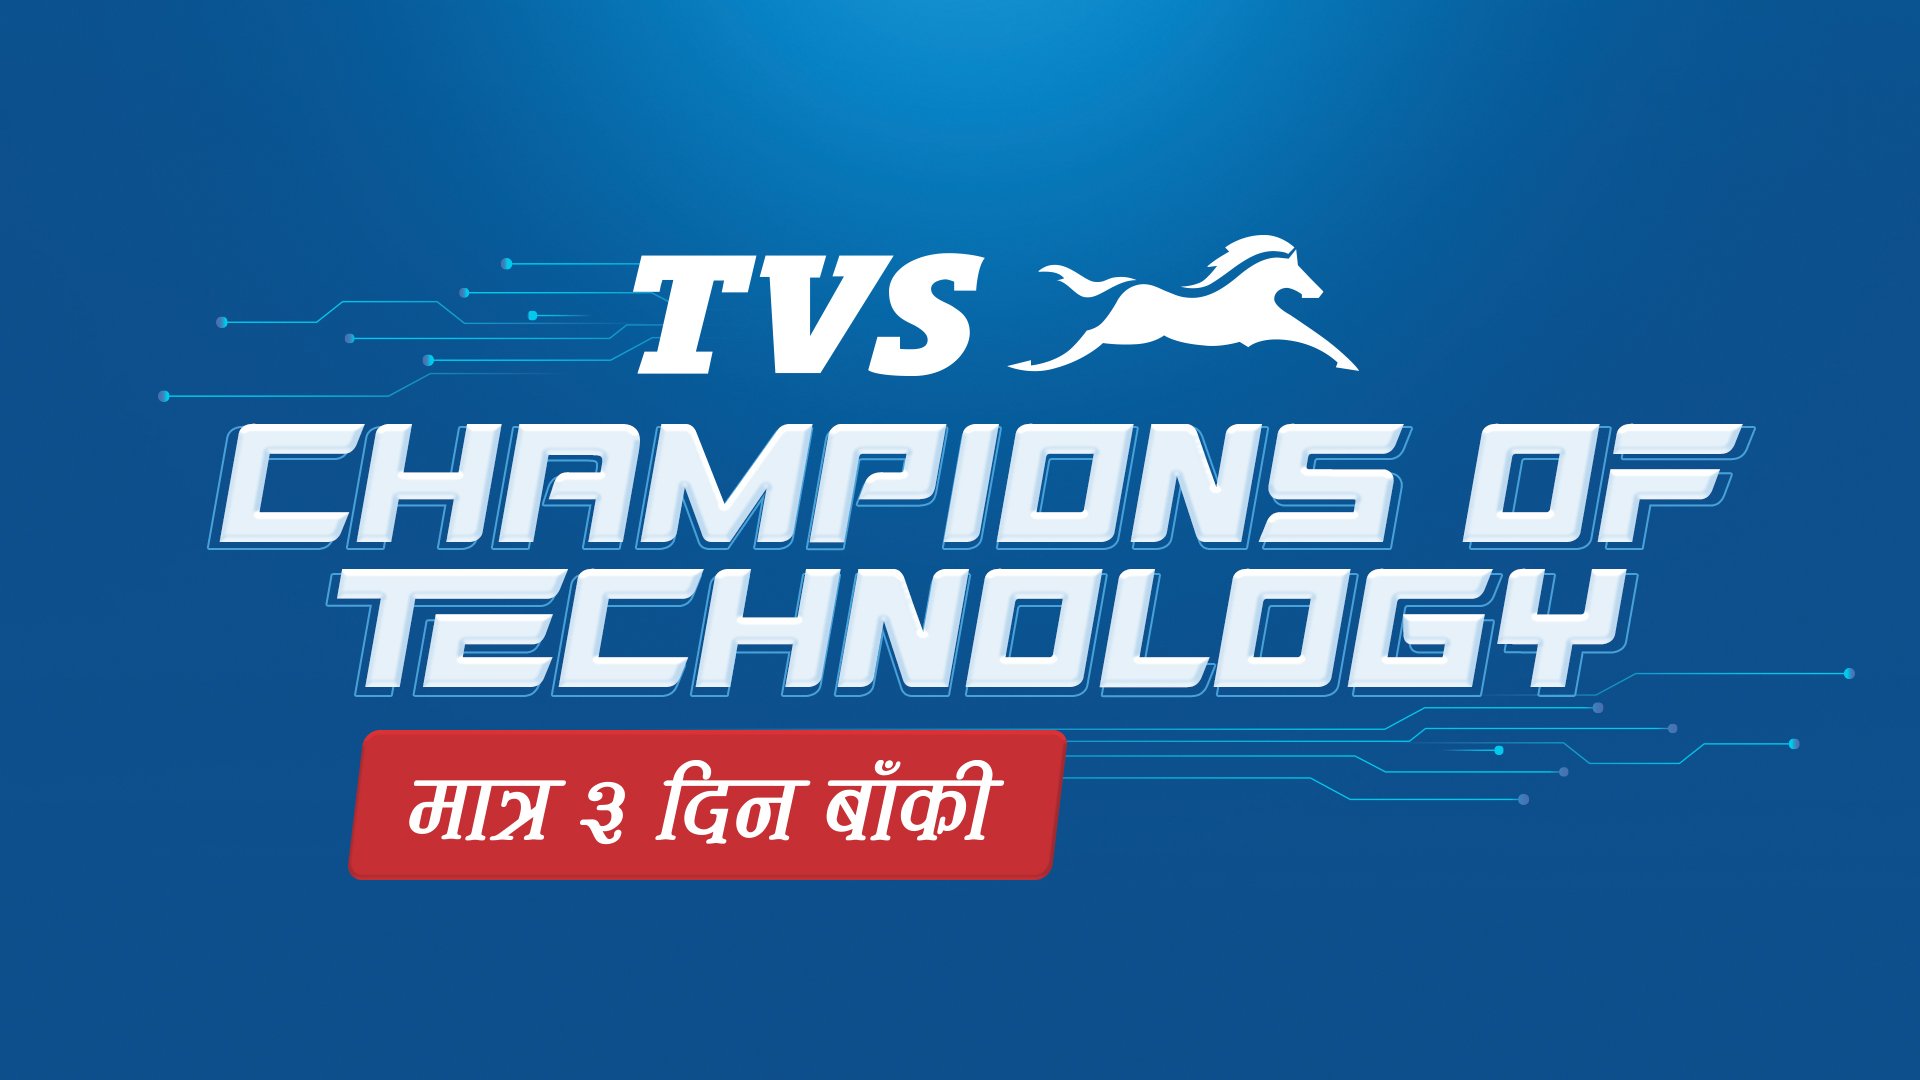 TVS को चयाम्पियन अफ टेक्नोलोजी अफर अब ३ दिन मात्र बाँकी